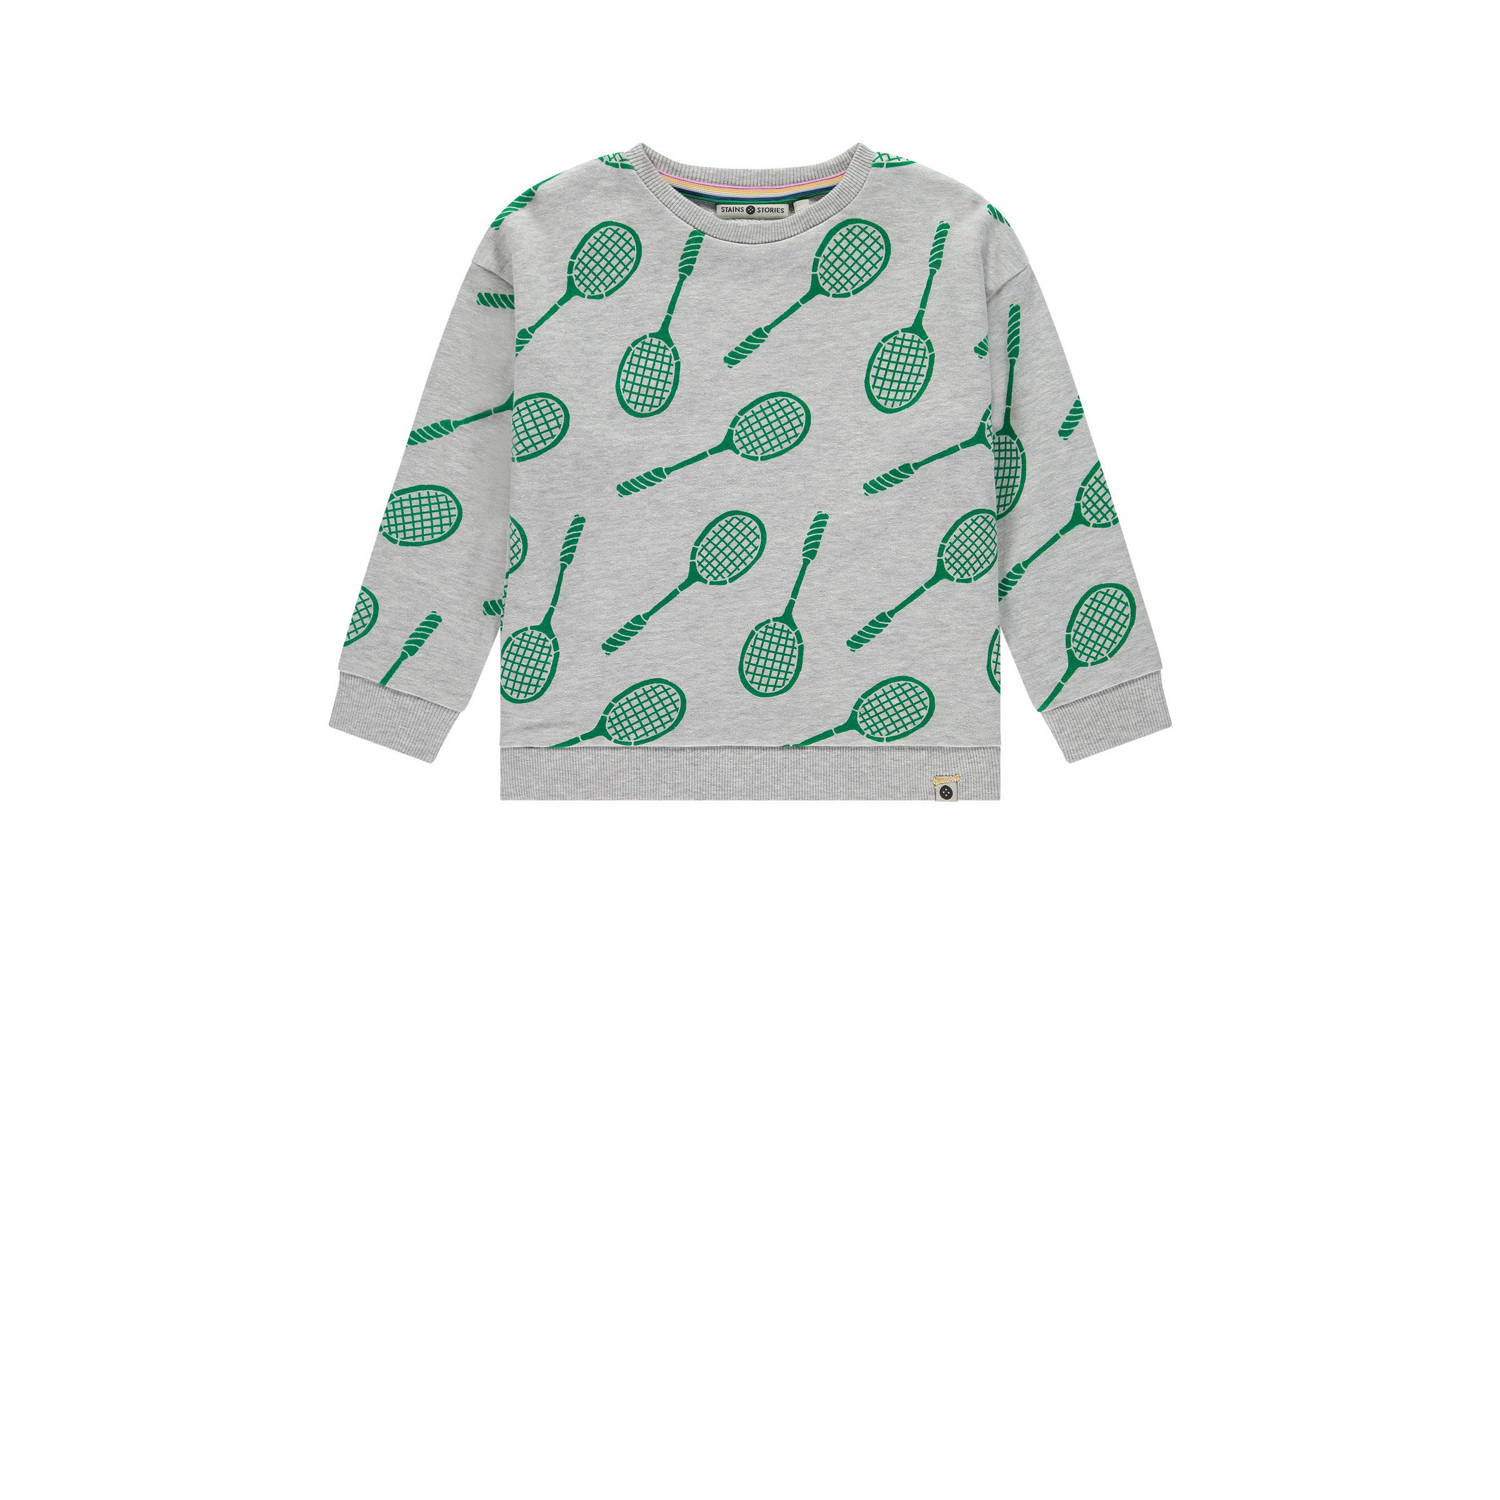 Stains&Stories sweater met all over print grijs groen